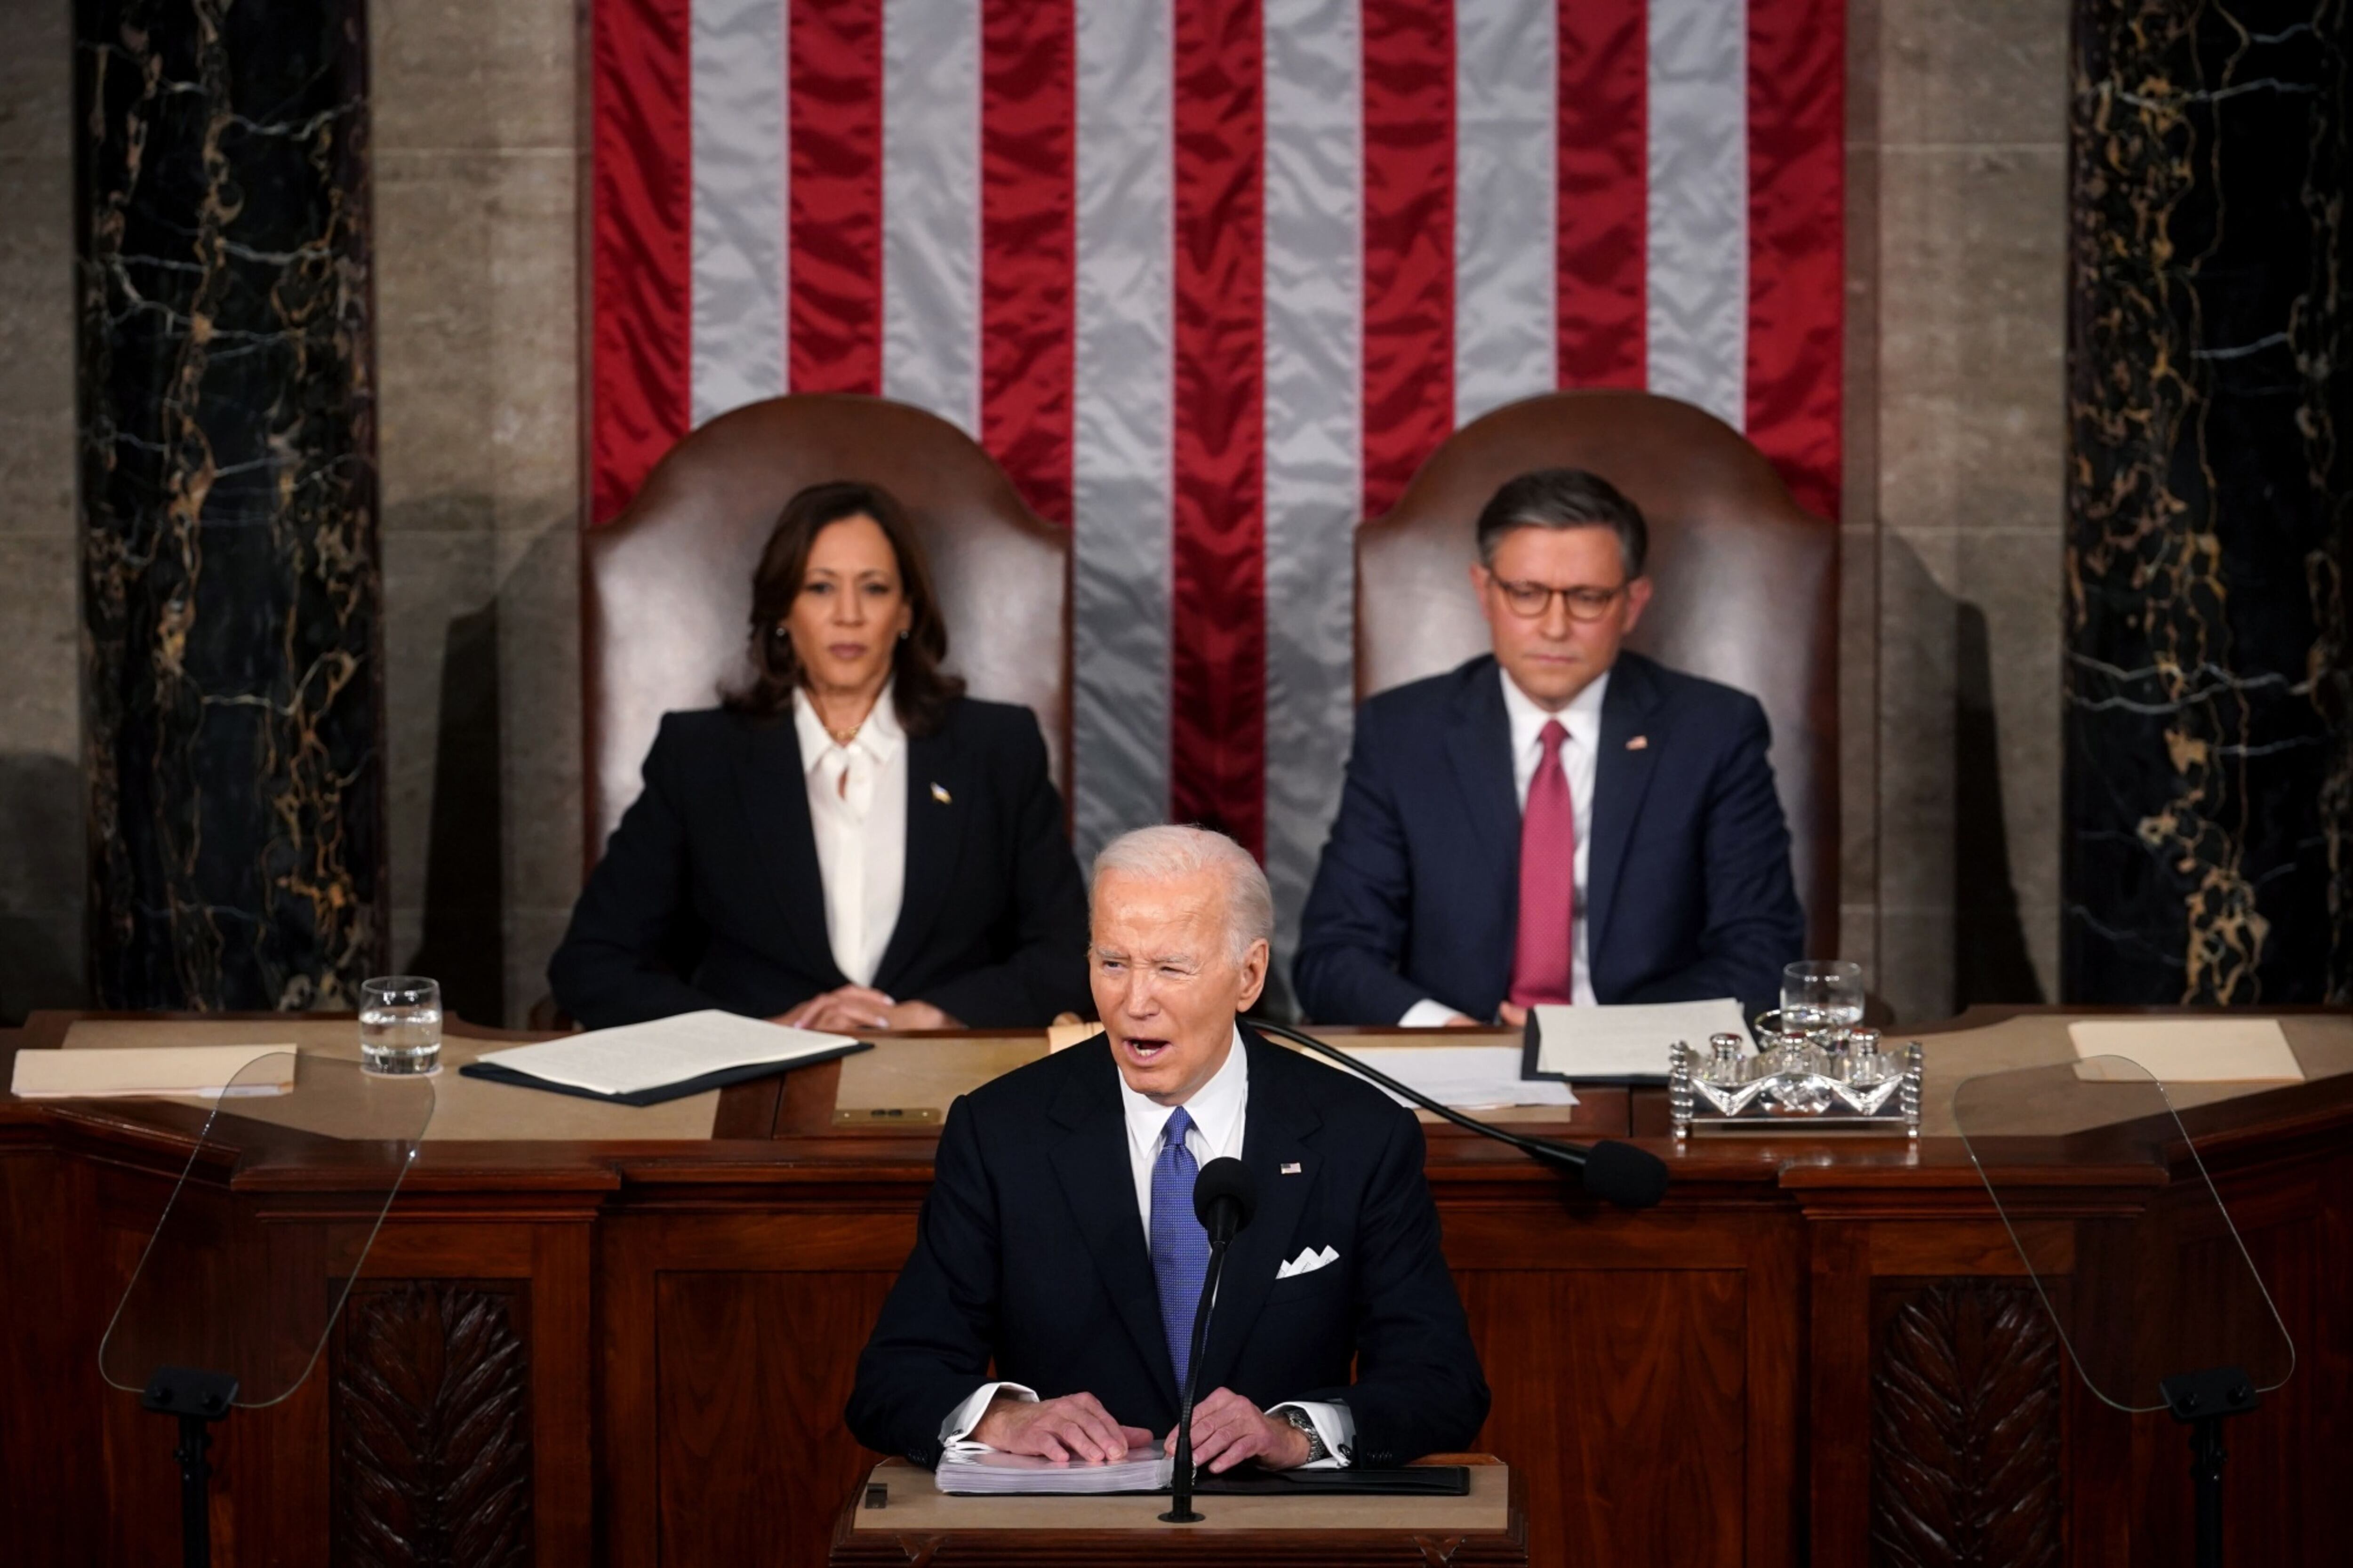 Estado de la Unión: Las claves del mensaje de Joe Biden y el momento político que vive EU